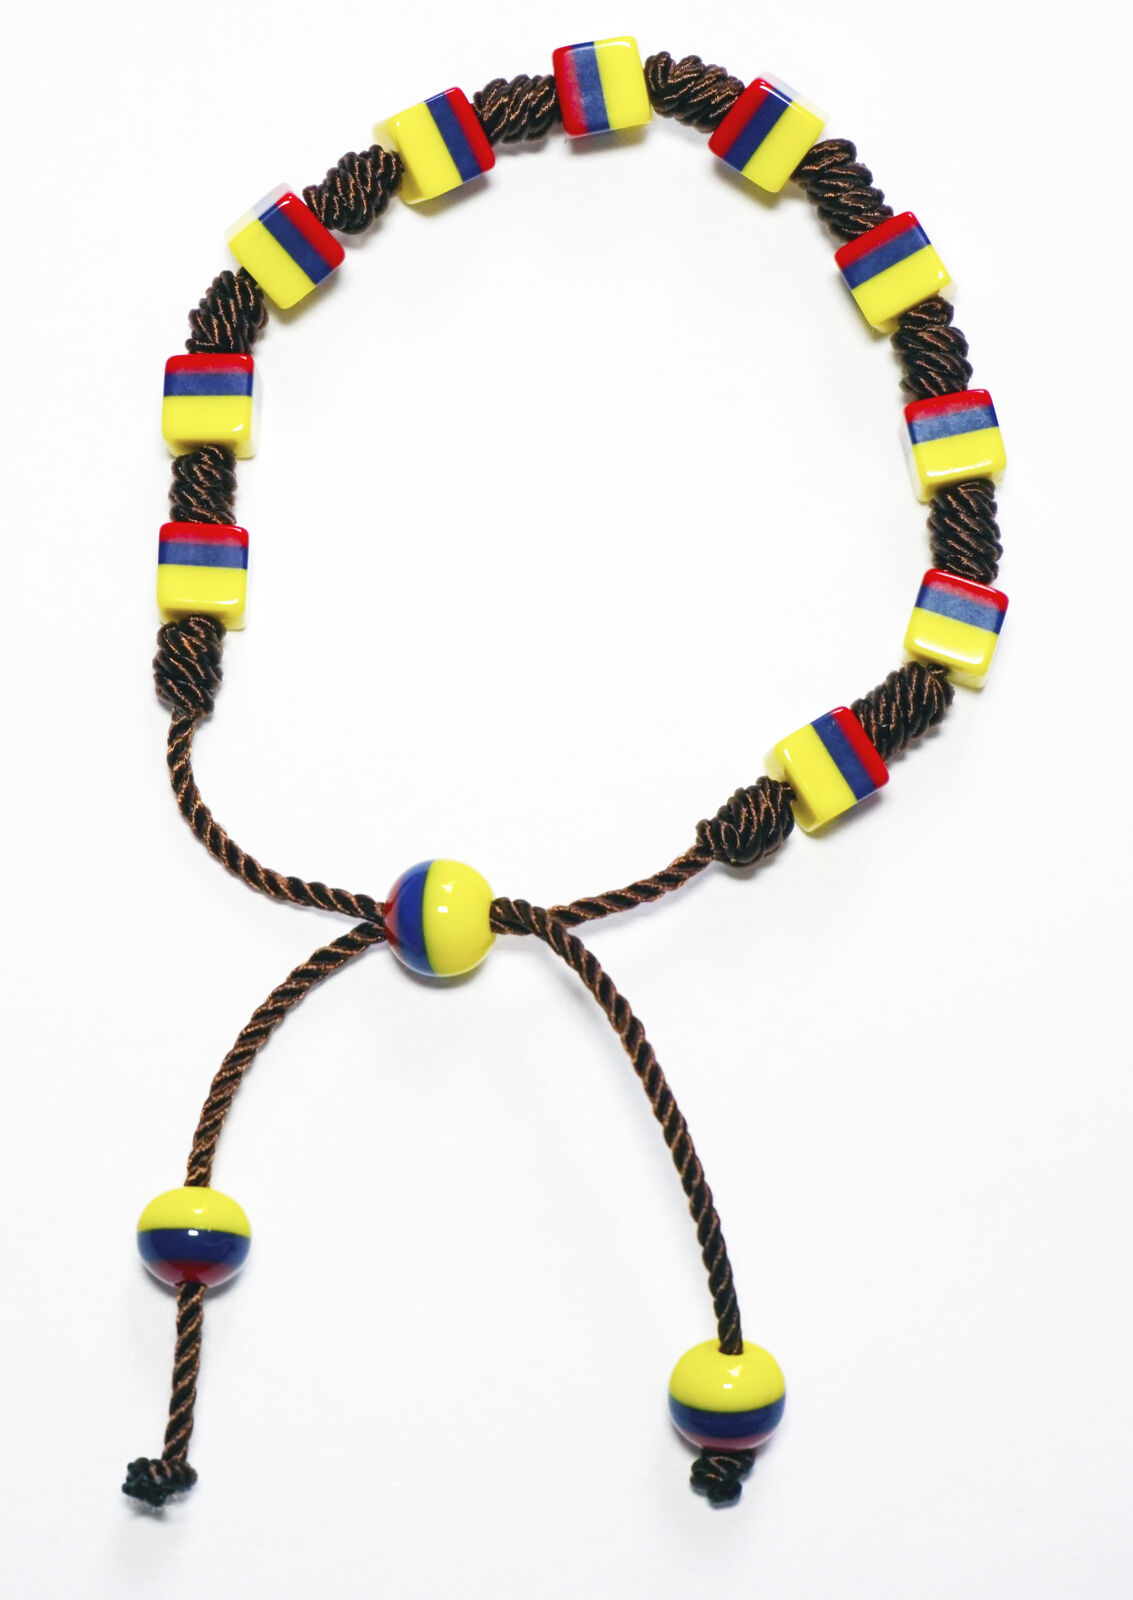 Genuine Handmade Bracelet Designed By Native Artisans Colombia Ecuador Venezuela